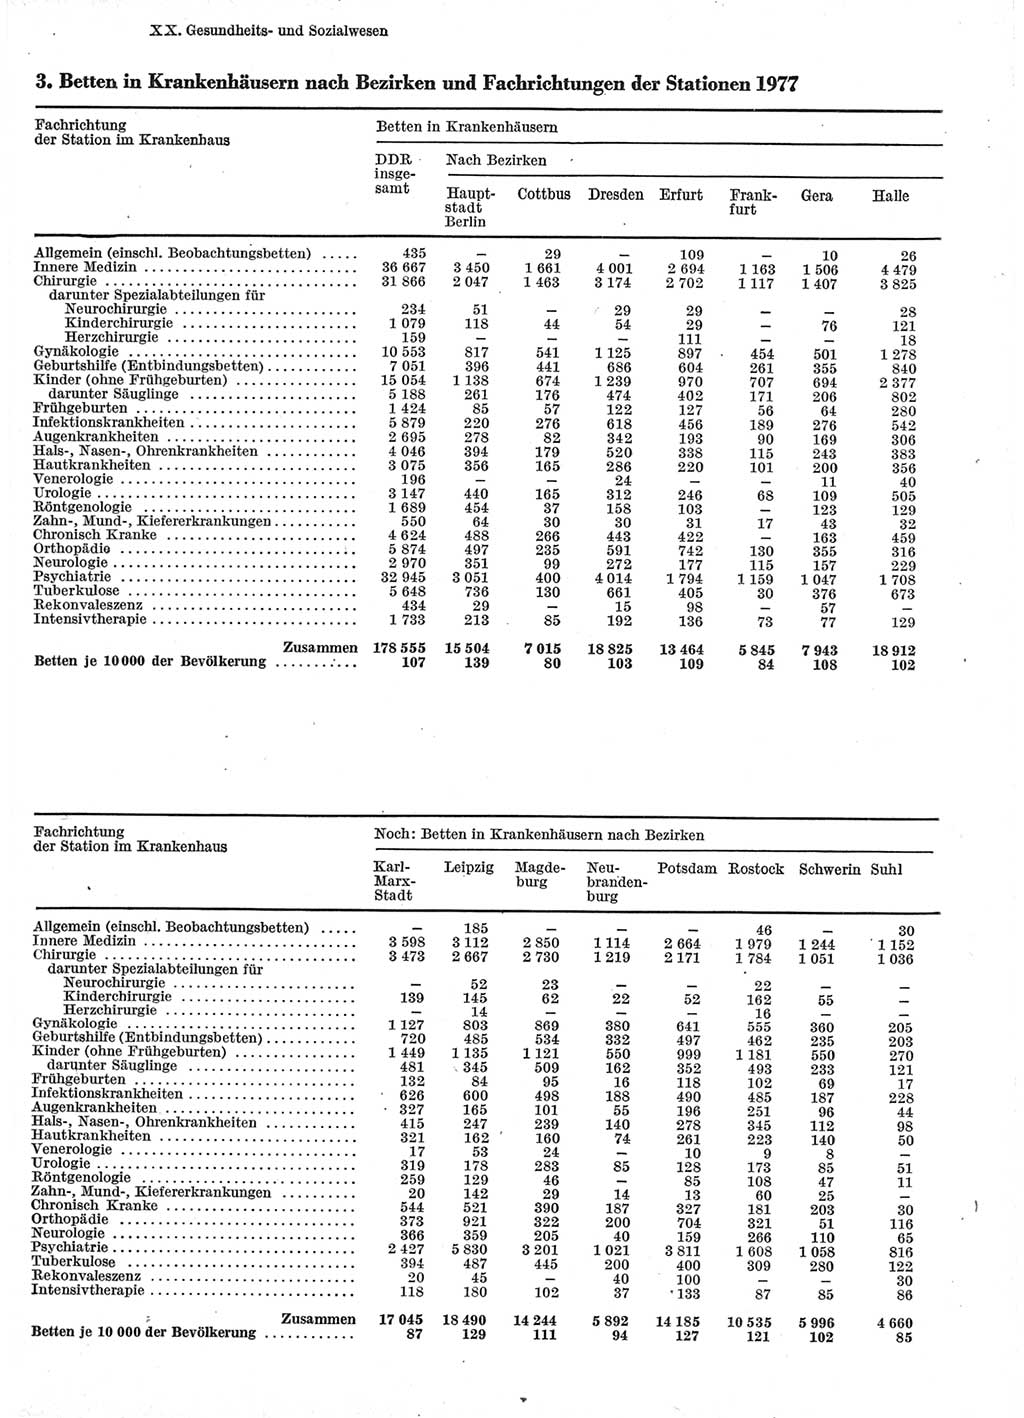 Statistisches Jahrbuch der Deutschen Demokratischen Republik (DDR) 1978, Seite 329 (Stat. Jb. DDR 1978, S. 329)